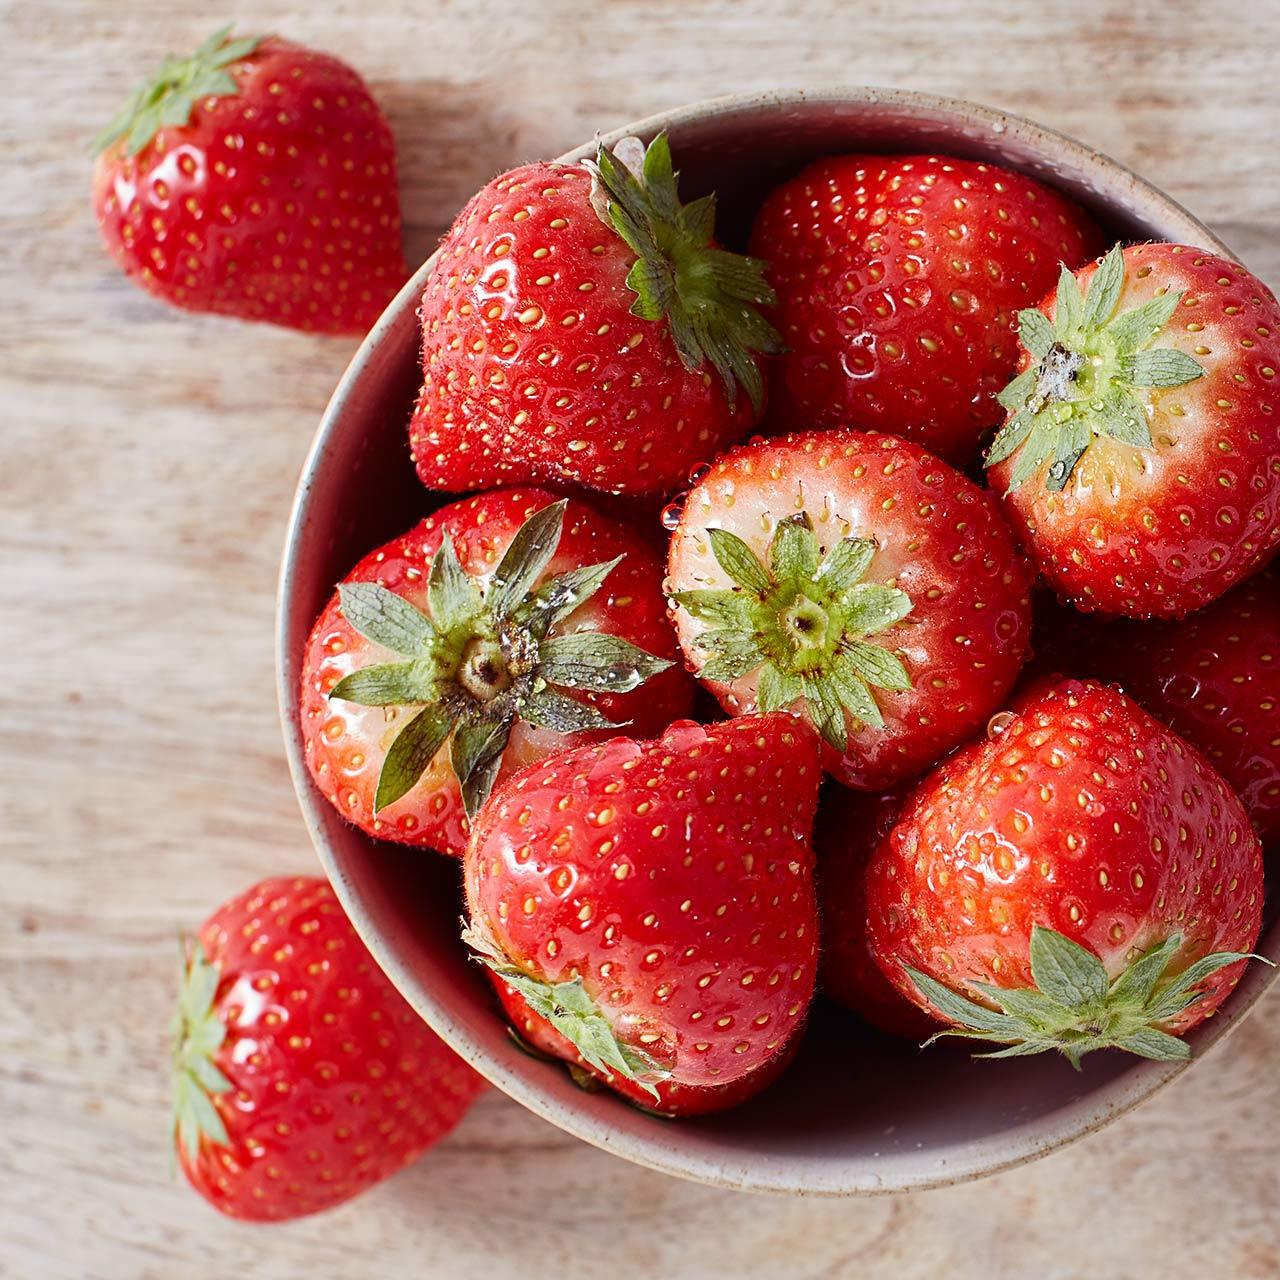 Ocado British Strawberries 227g